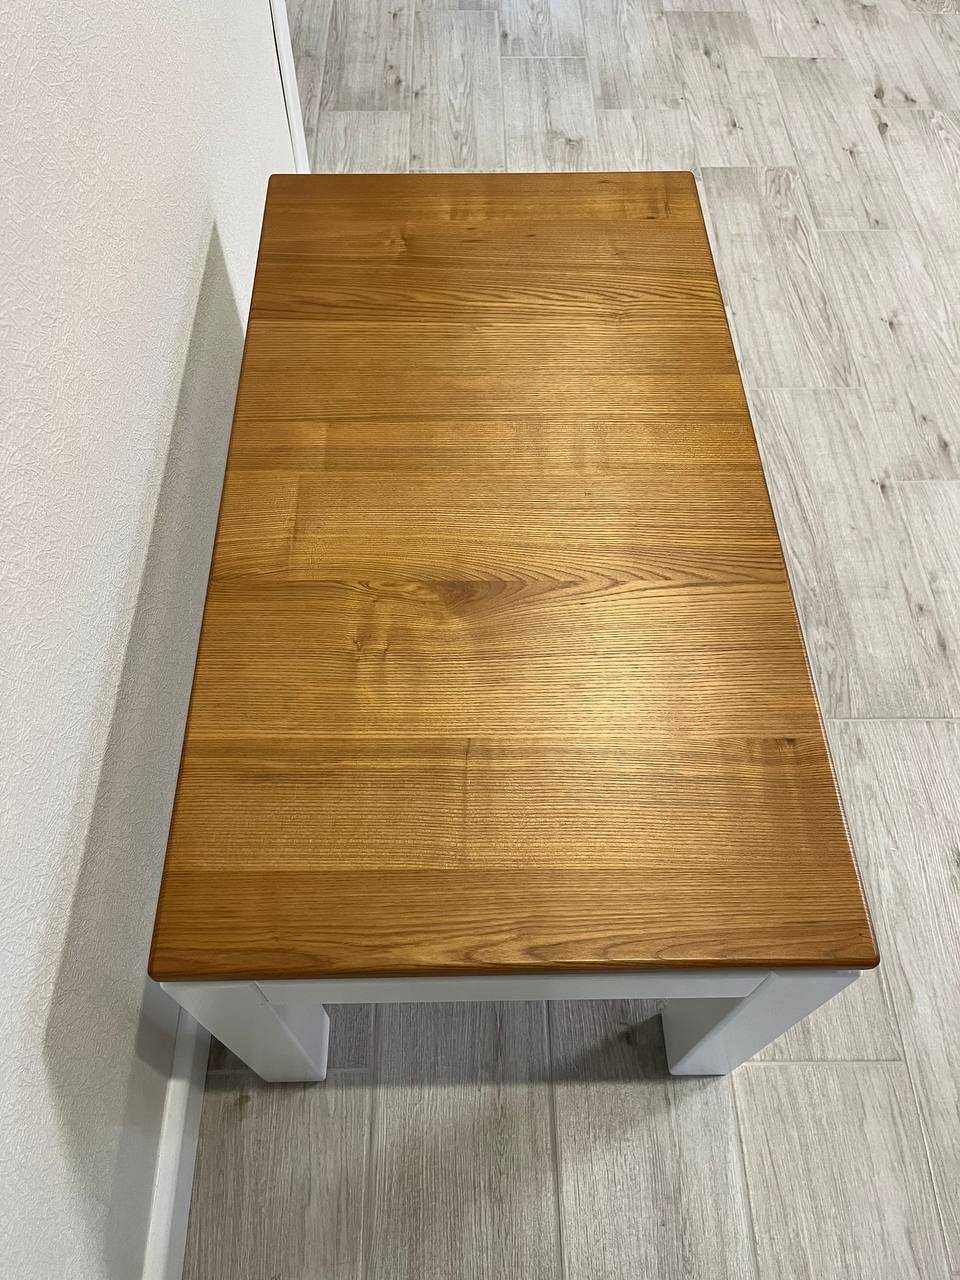 Продам деревянный стол столик журнальный ясень массив белый 90х50